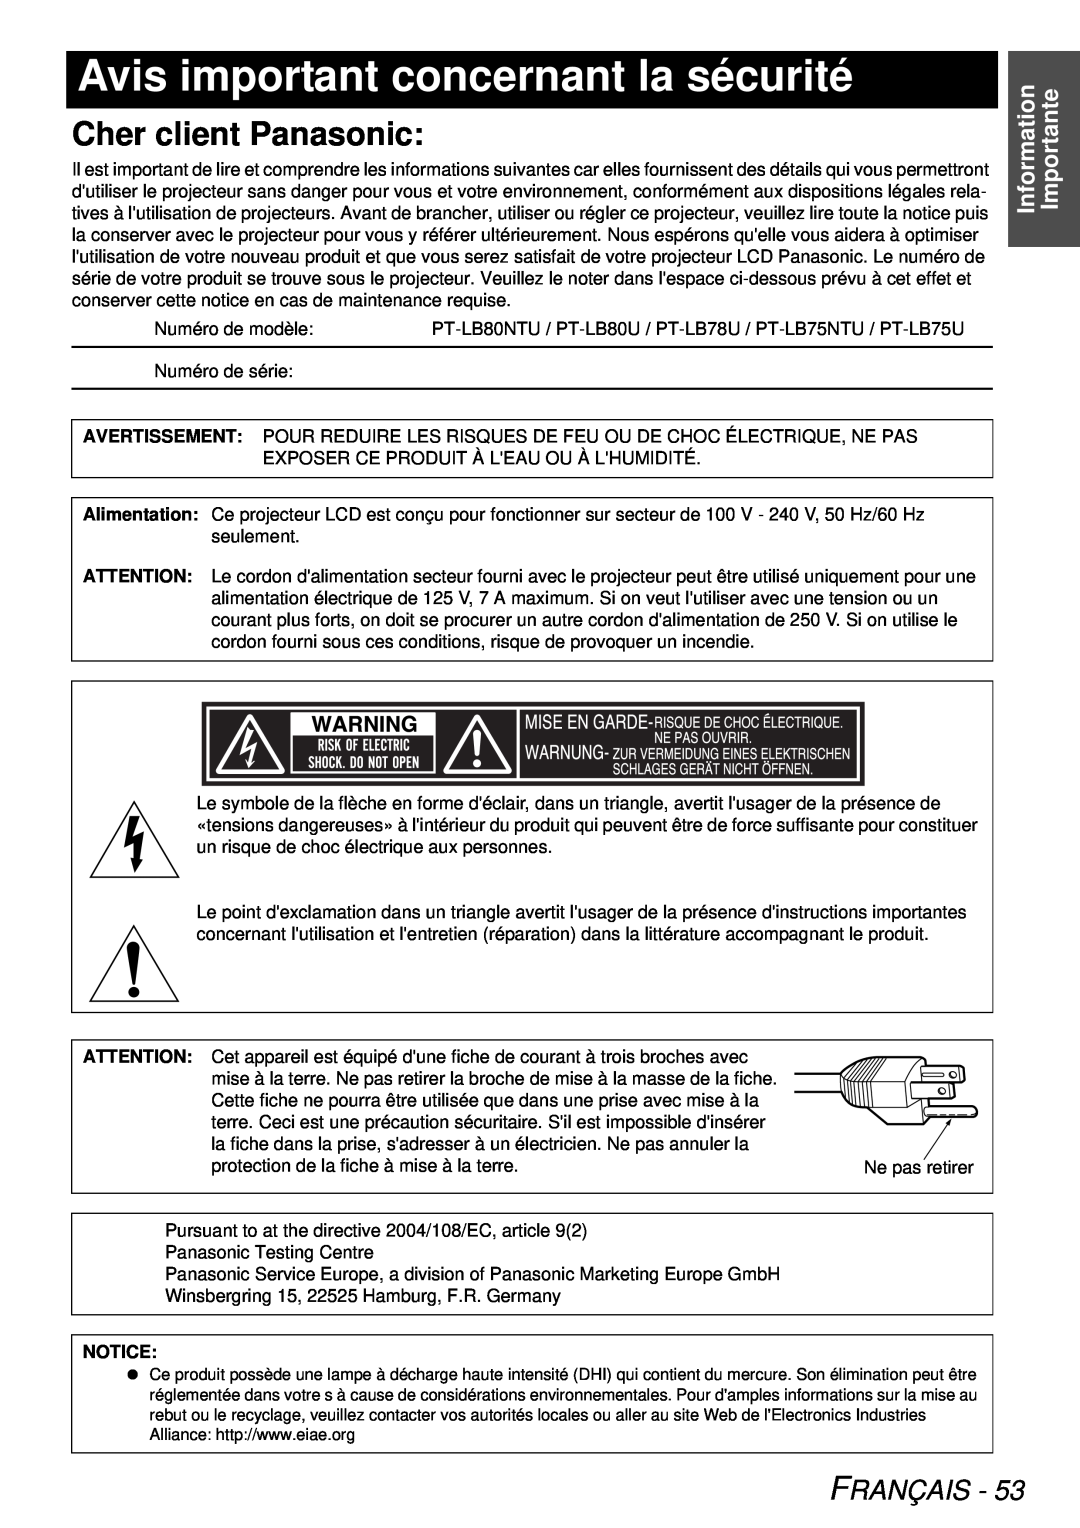 Panasonic PT-LB78U manual Avis important concernant la sécurité, Cher client Panasonic, Français, Information Importante 